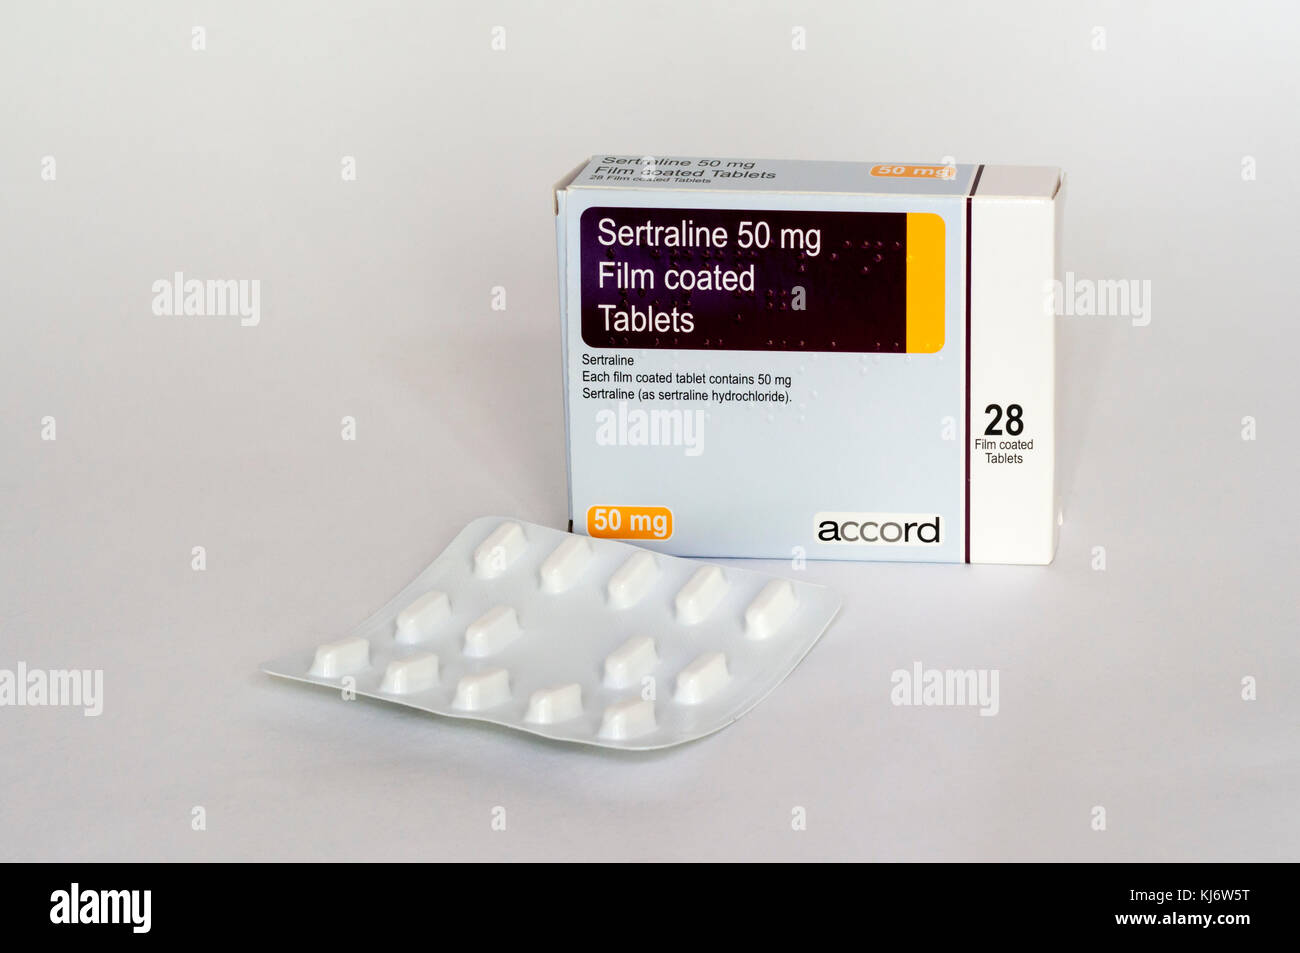 Eine Packung Sertralin Tabletten als Behandlung für Depressionen verwendet  Stockfotografie - Alamy